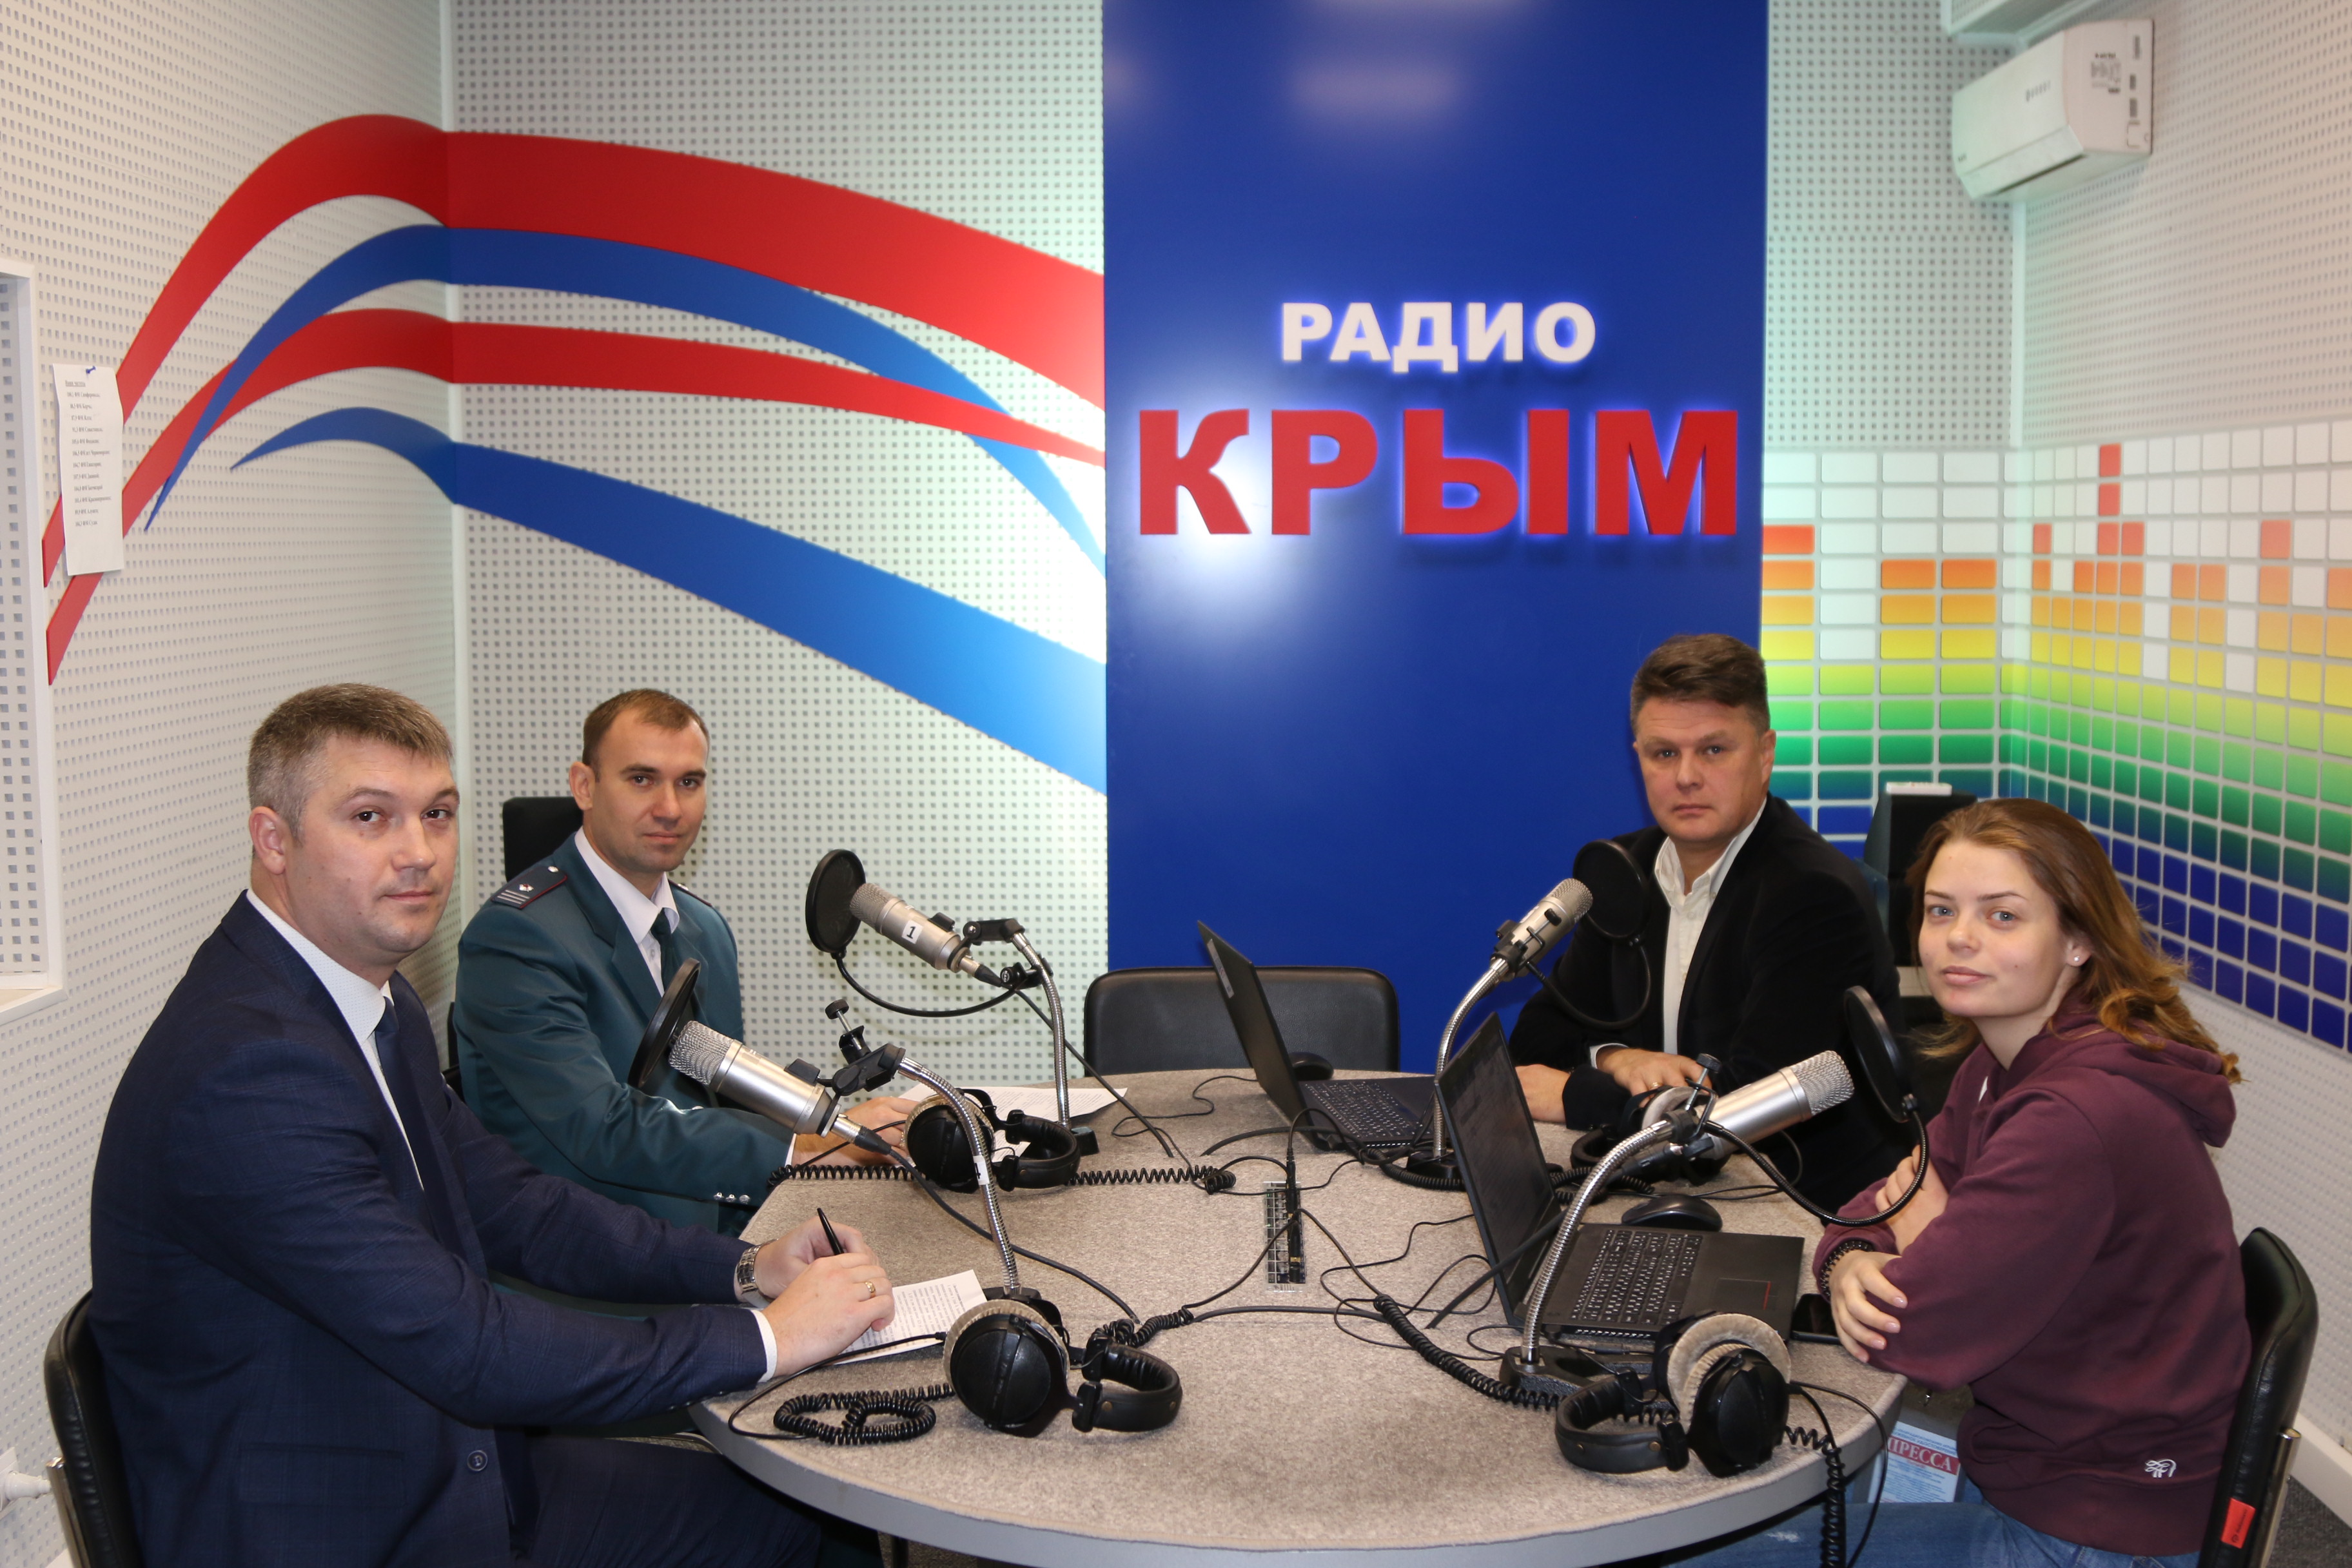 Налоговая служба крыма. Радио Крым. Радио Крым телефон прямого эфира.